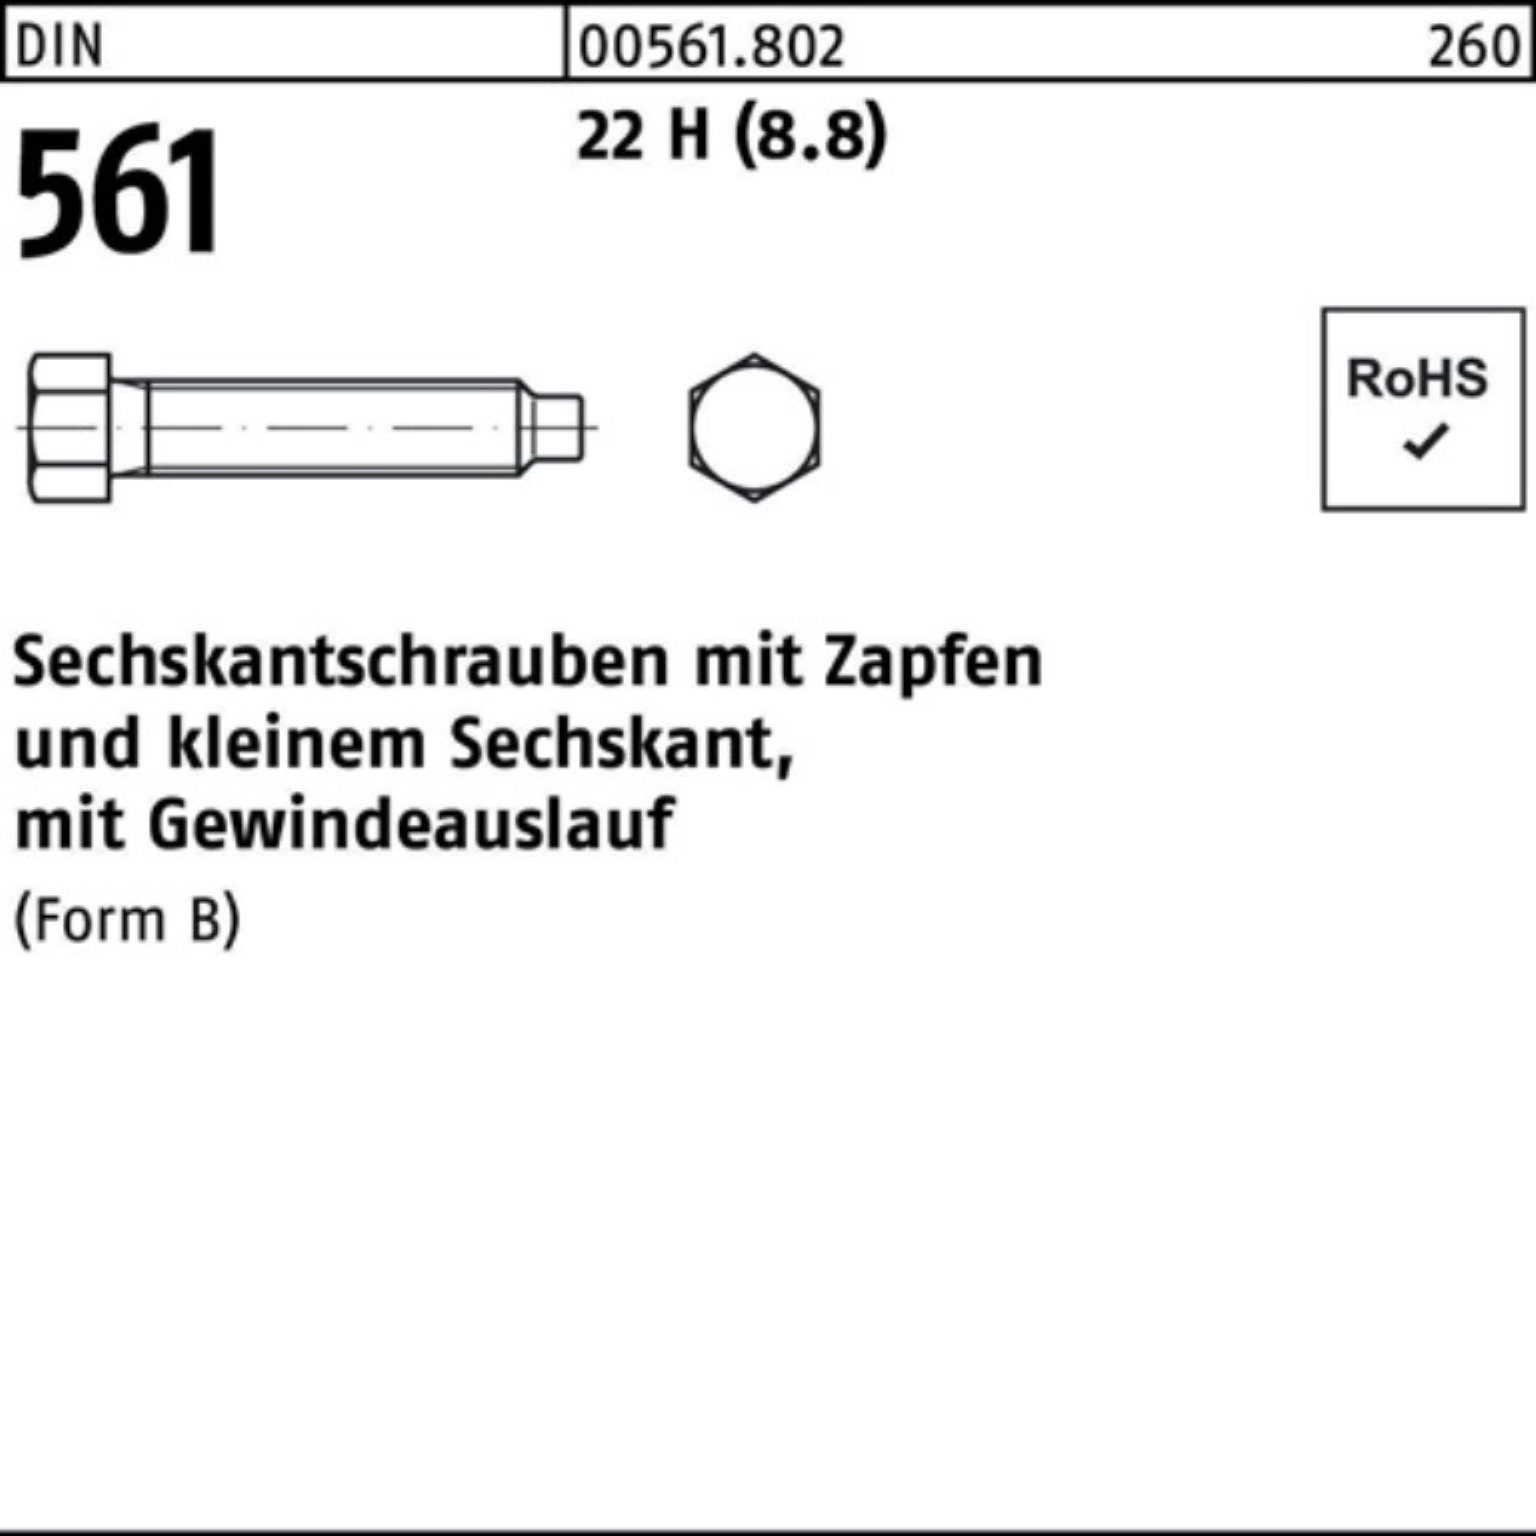 St 100er (8.8) 22 DIN 60 561 BM H Pack Reyher Sechskantschraube Sechskantschraube Zapfen 1 30x